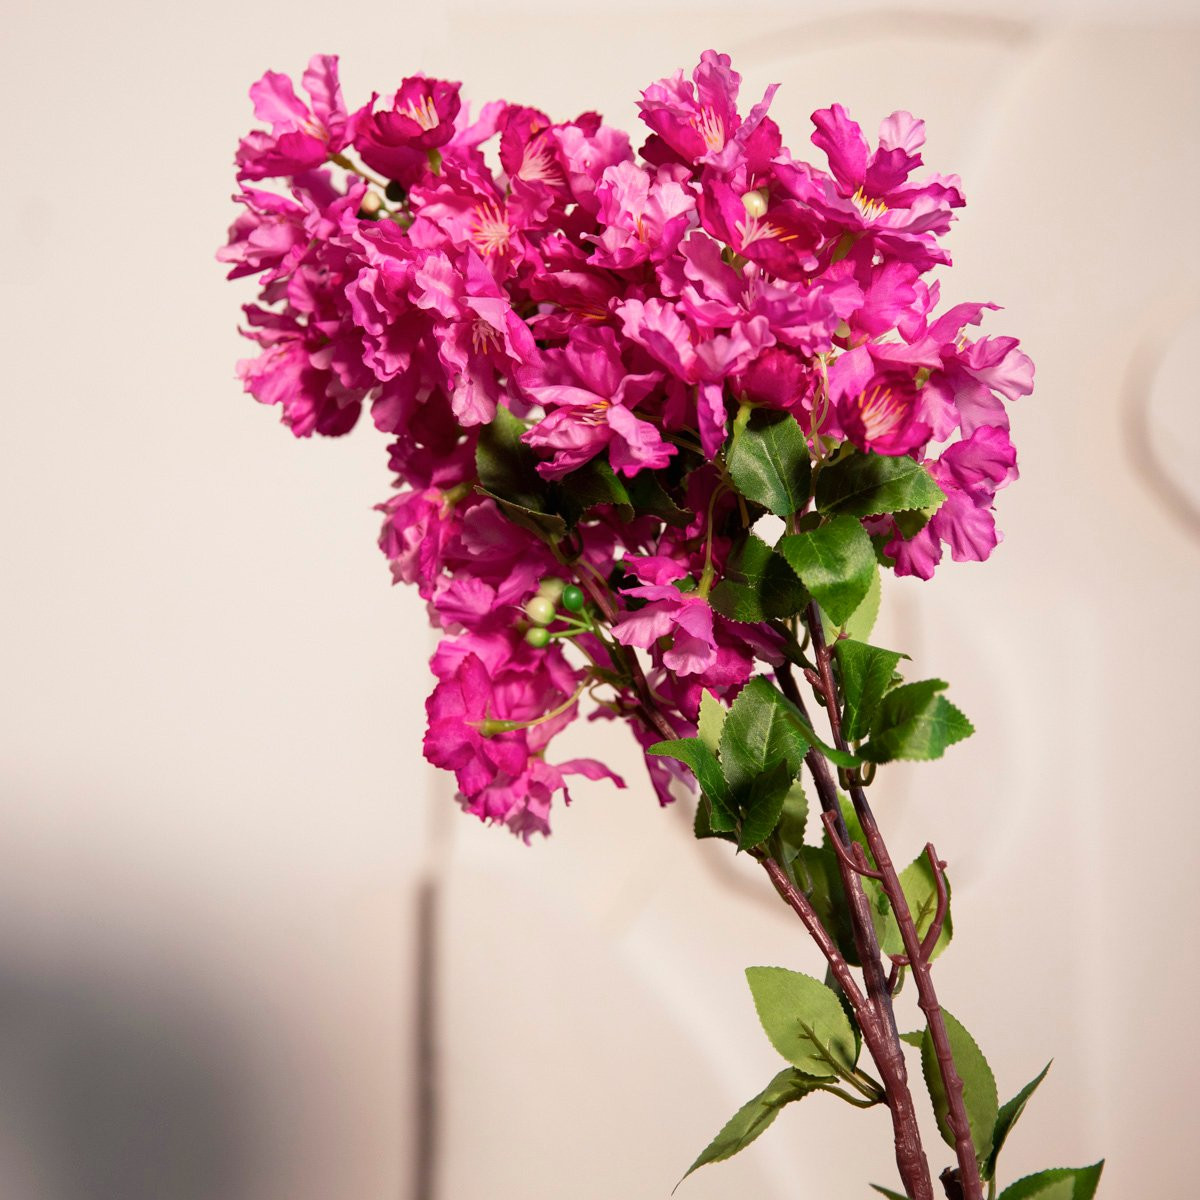 Umelý kvet FLORAL AURA fialový 882369 98 cm